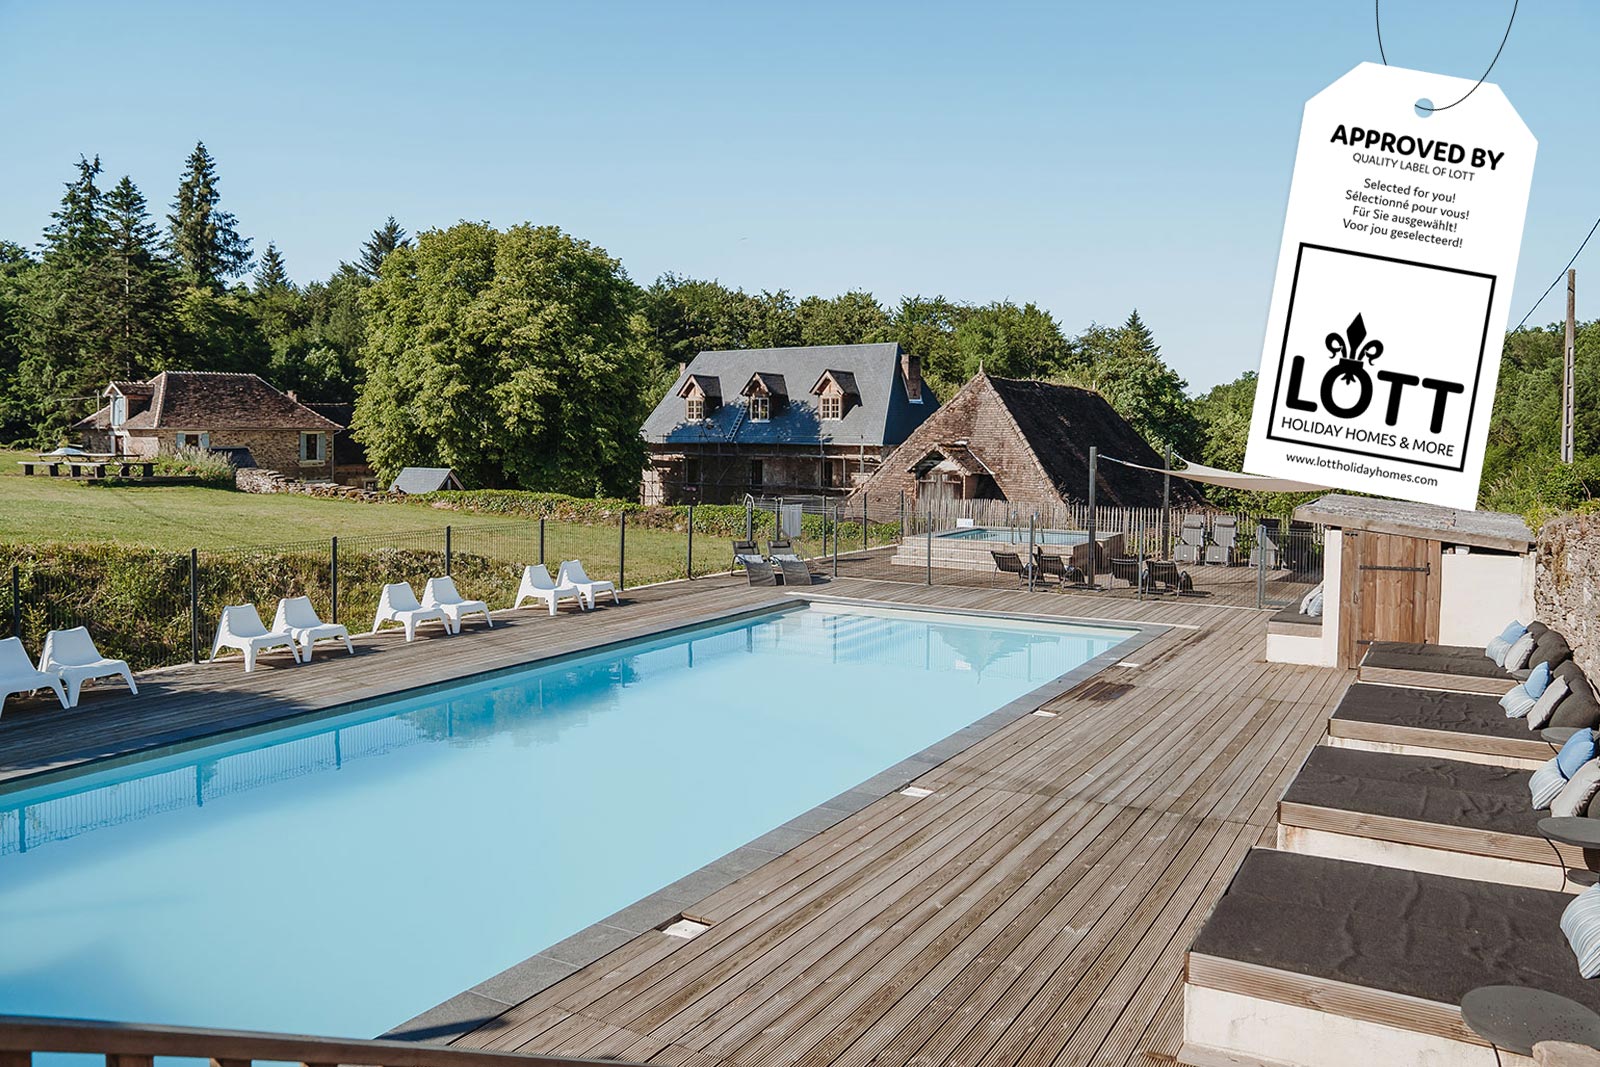 Natuurhuisje met zwembad op luxe vakantieparkje in Midden-Frankrijk.